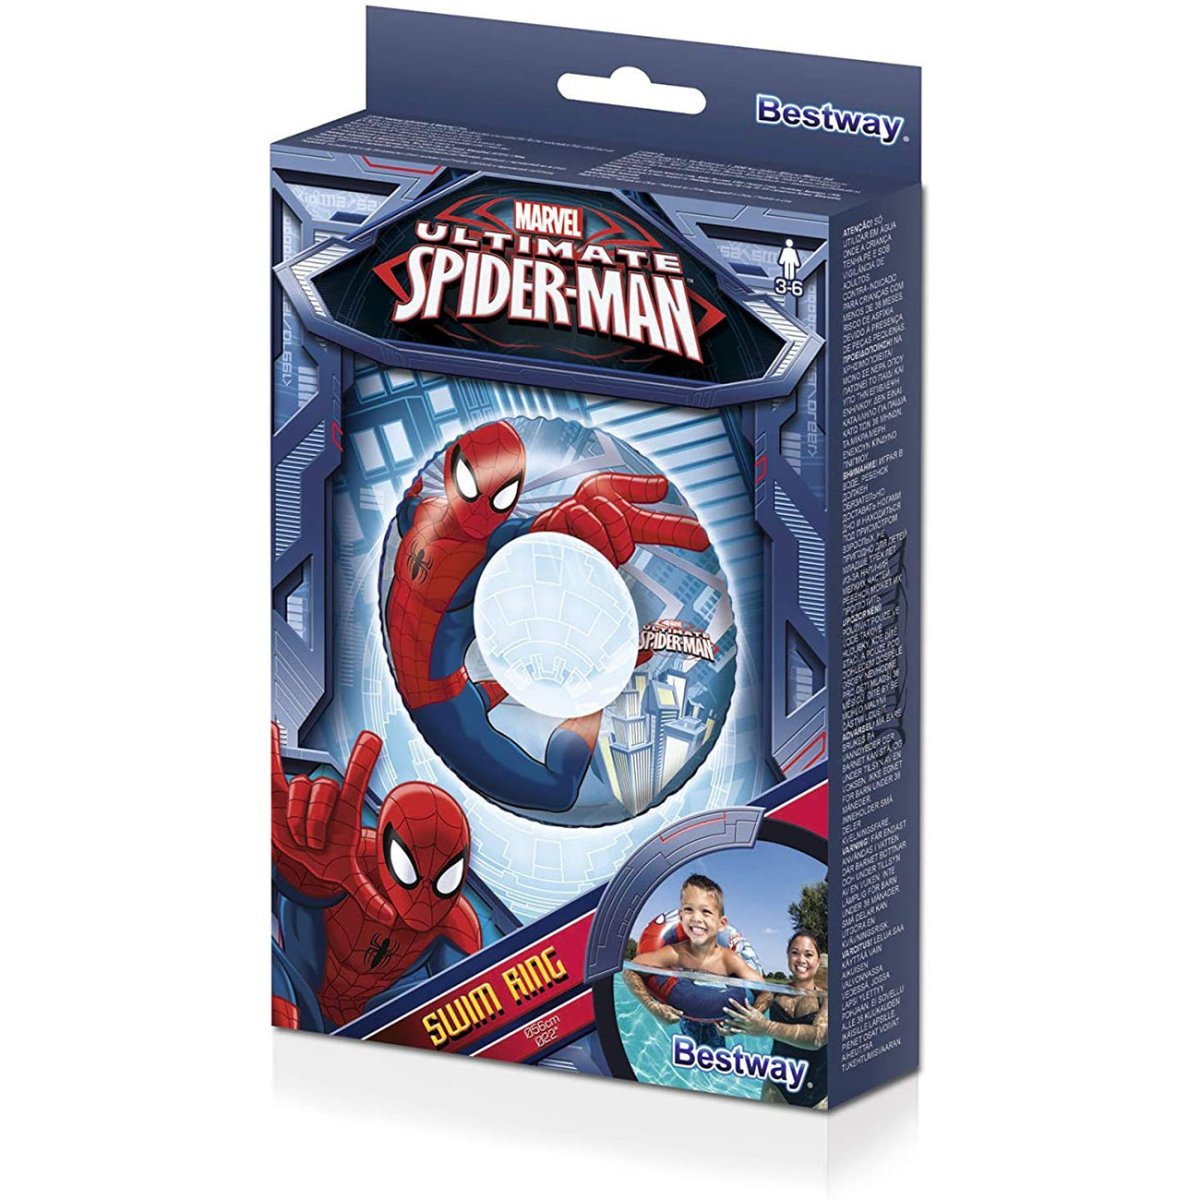 Flotador Hinchable Infantil Spiderman 56 cm - movilcom.com